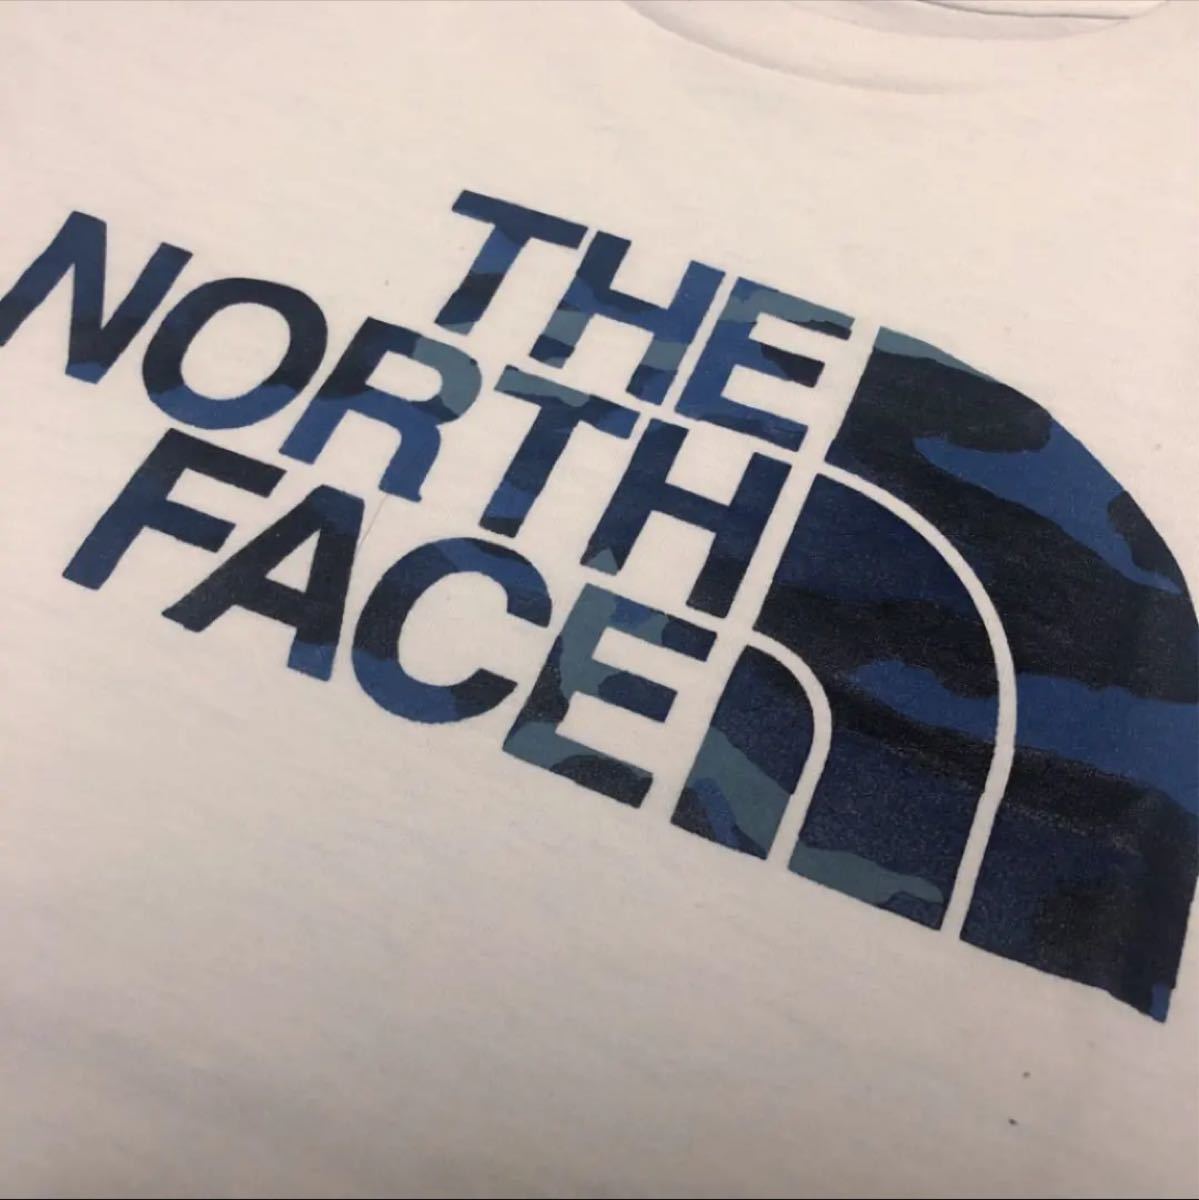 THE NORTH FACE ブルー迷彩 ノースフェイス ロゴ Tシャツ